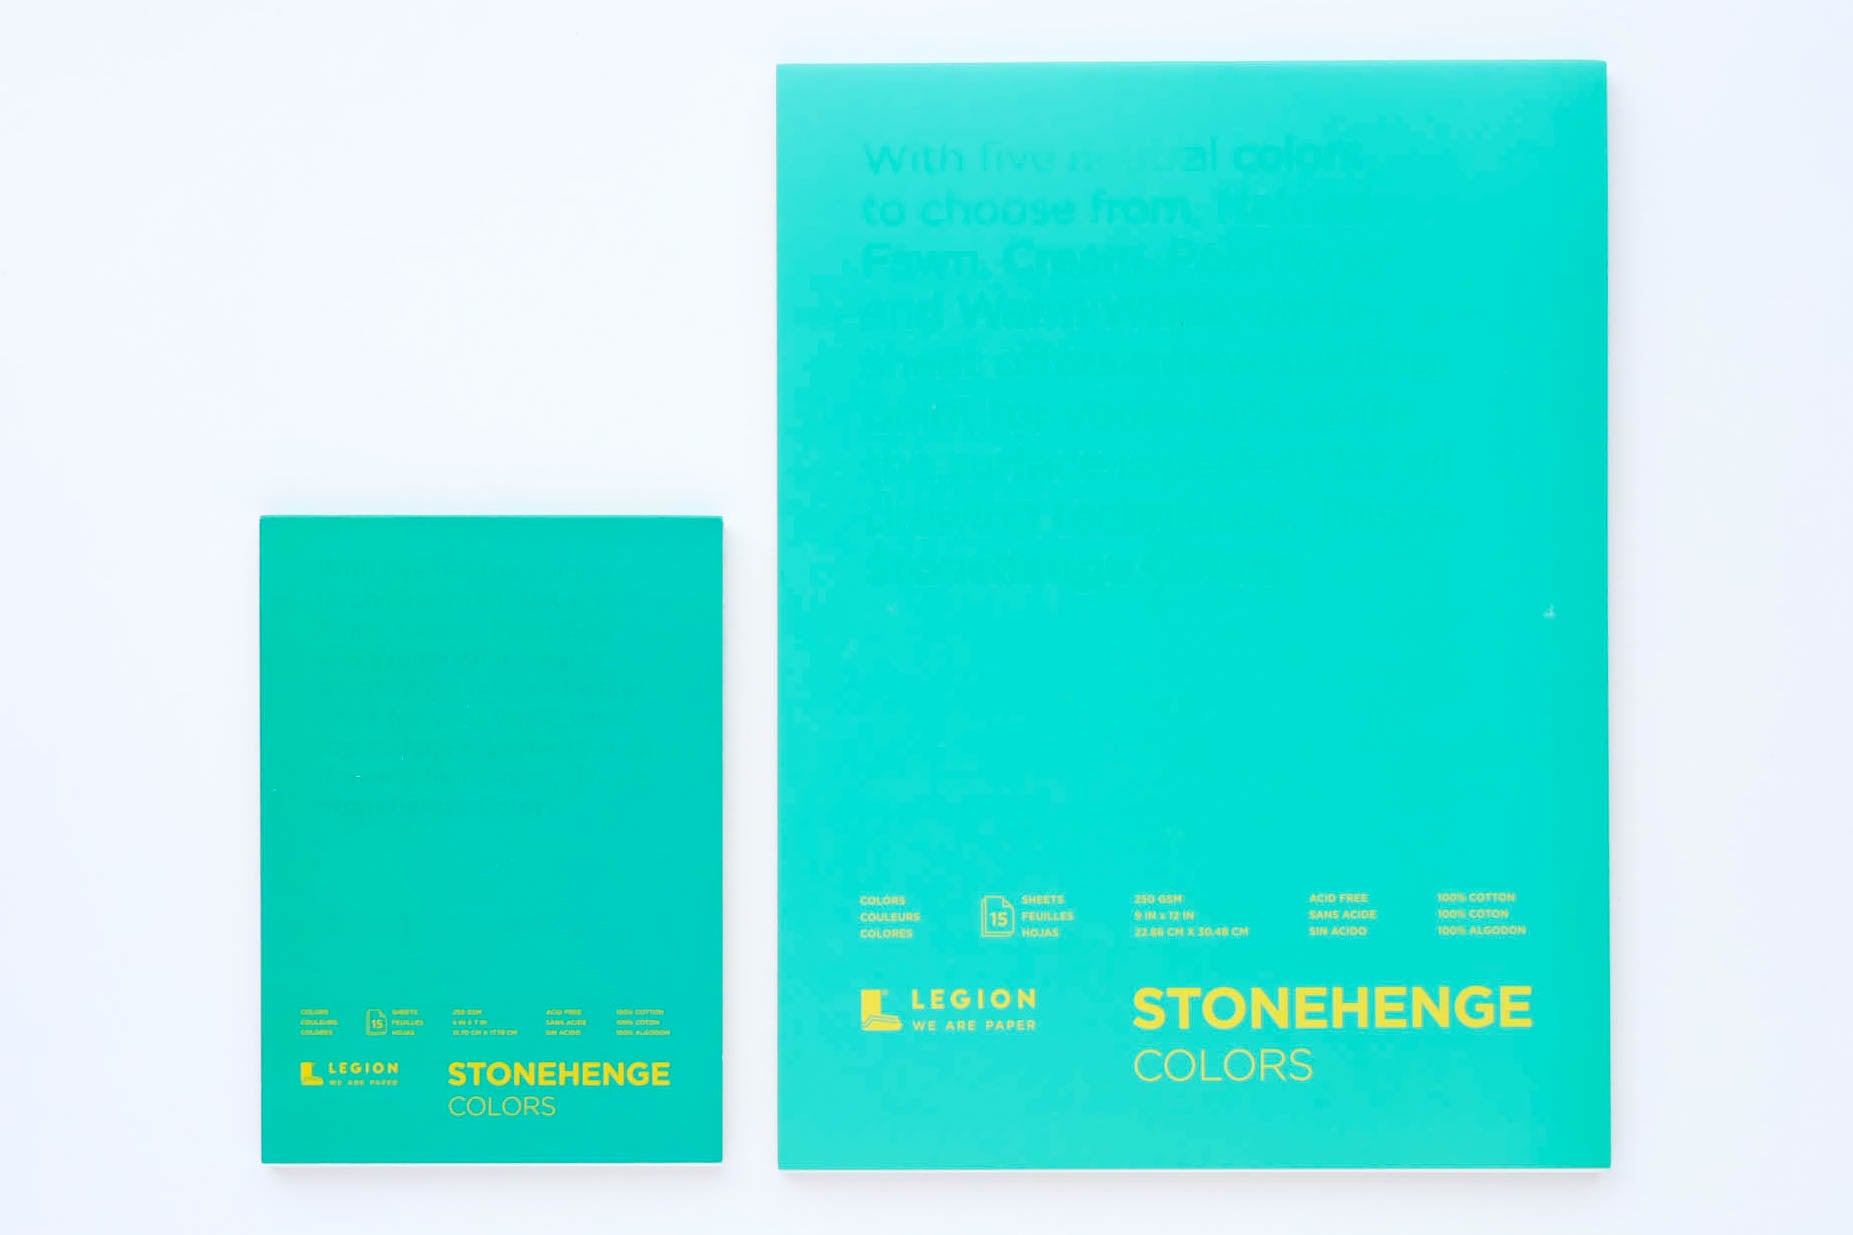 Stonehenge Colors